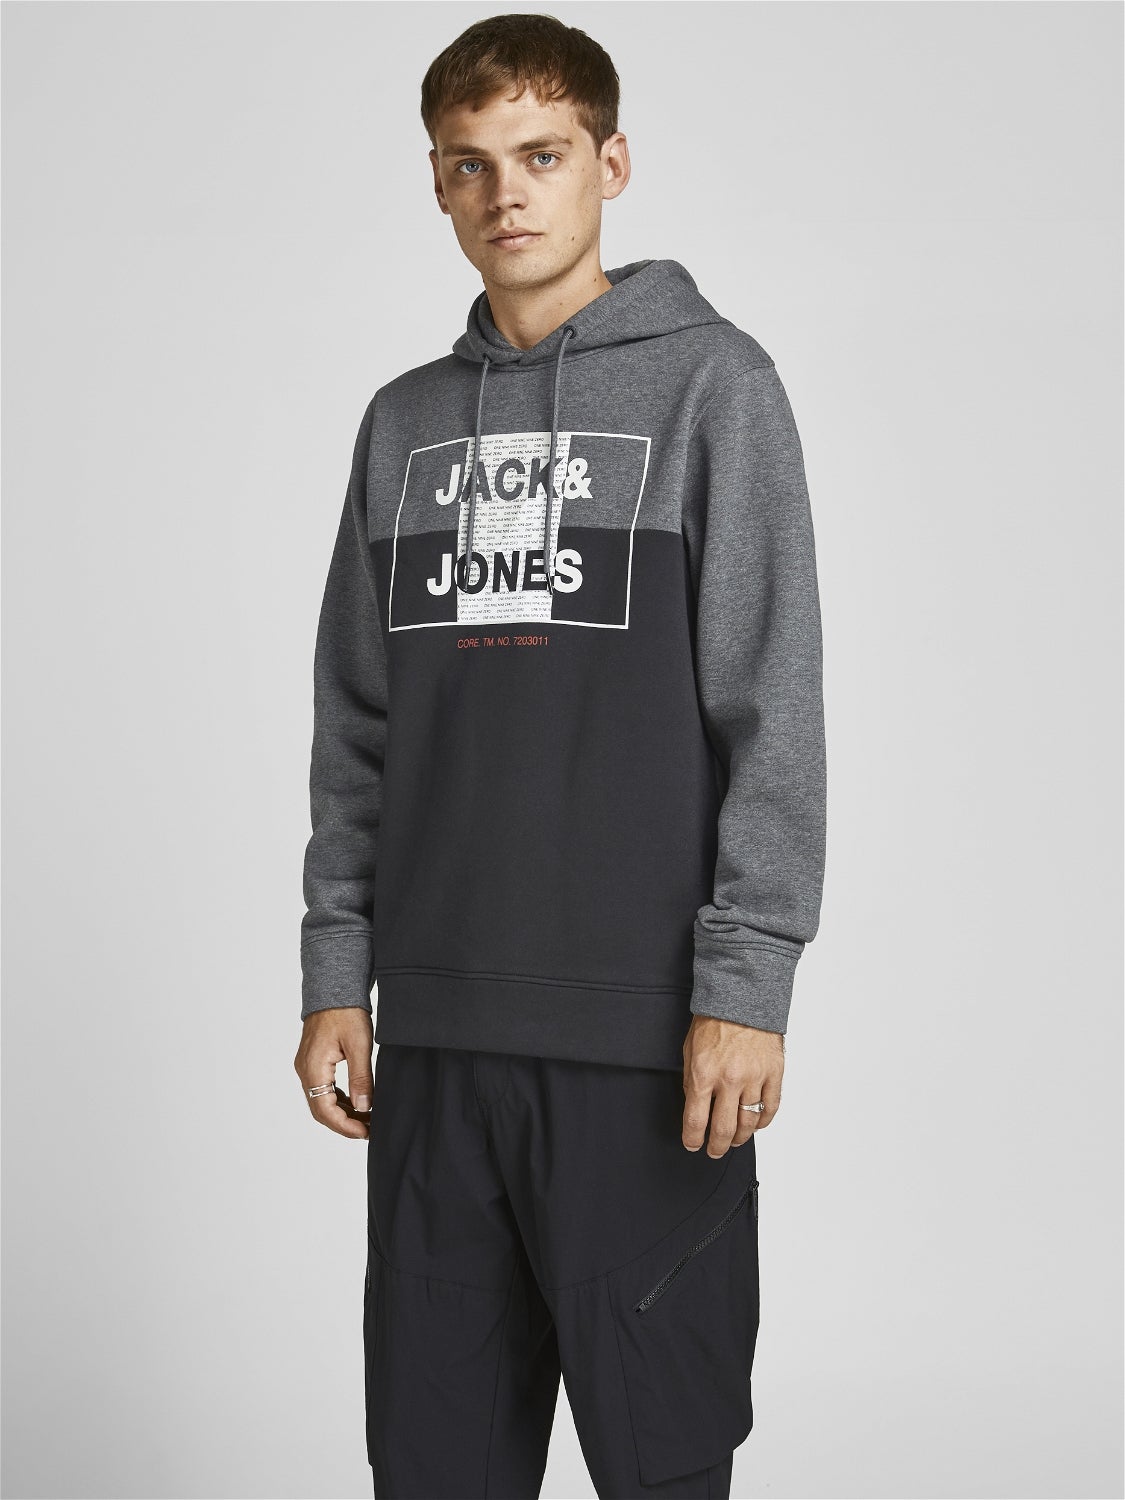 HERREN Pullovers & Sweatshirts Hoodie Grau L Jack & Jones sweatshirt Rabatt 57 % 